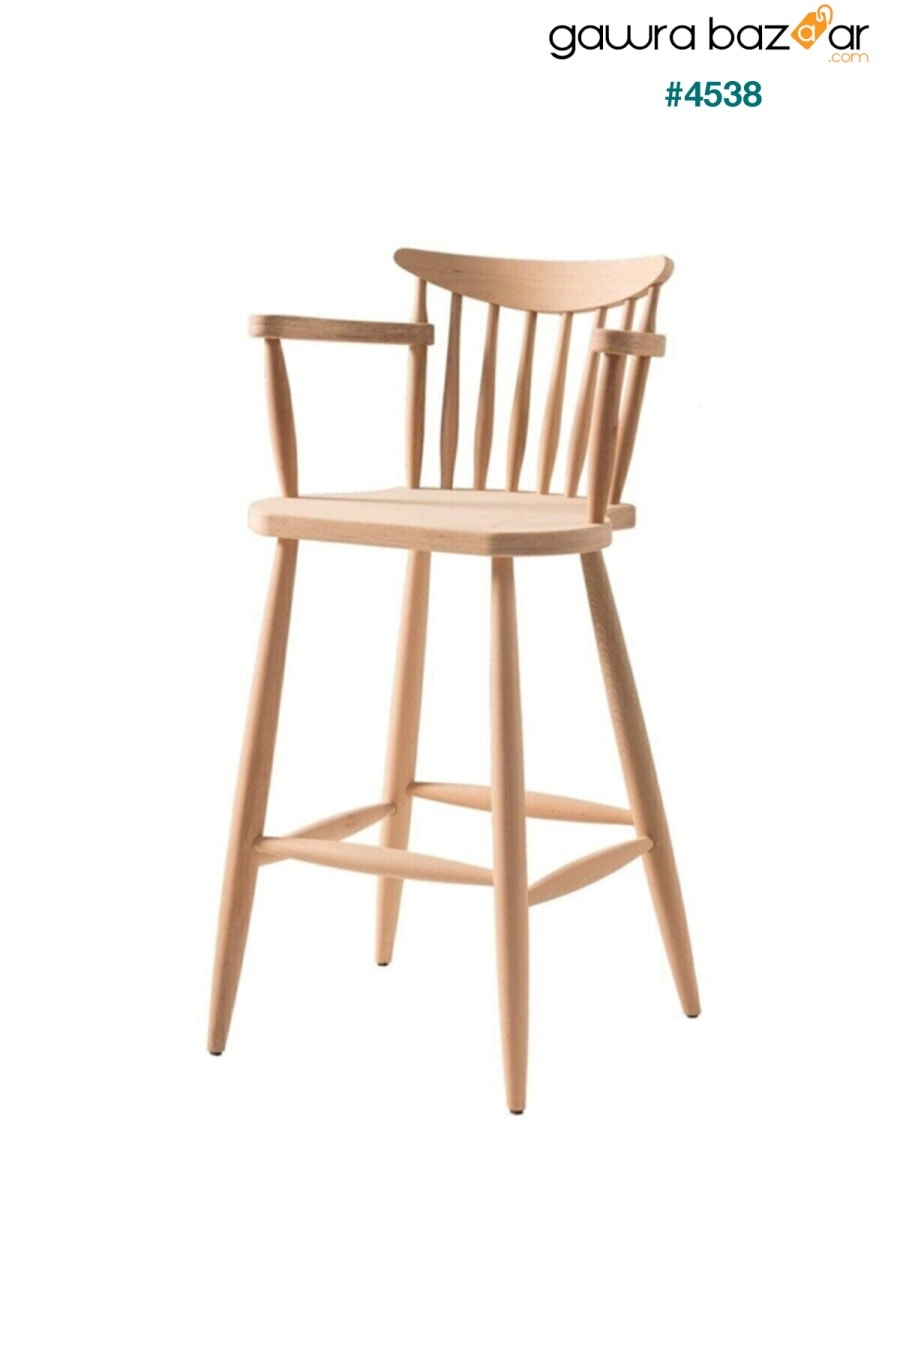 كرسي بذراعين خشبي كرسي مرتفع مصنوع من الخشب غير المصقول بأذرع مخروطية CLK 0